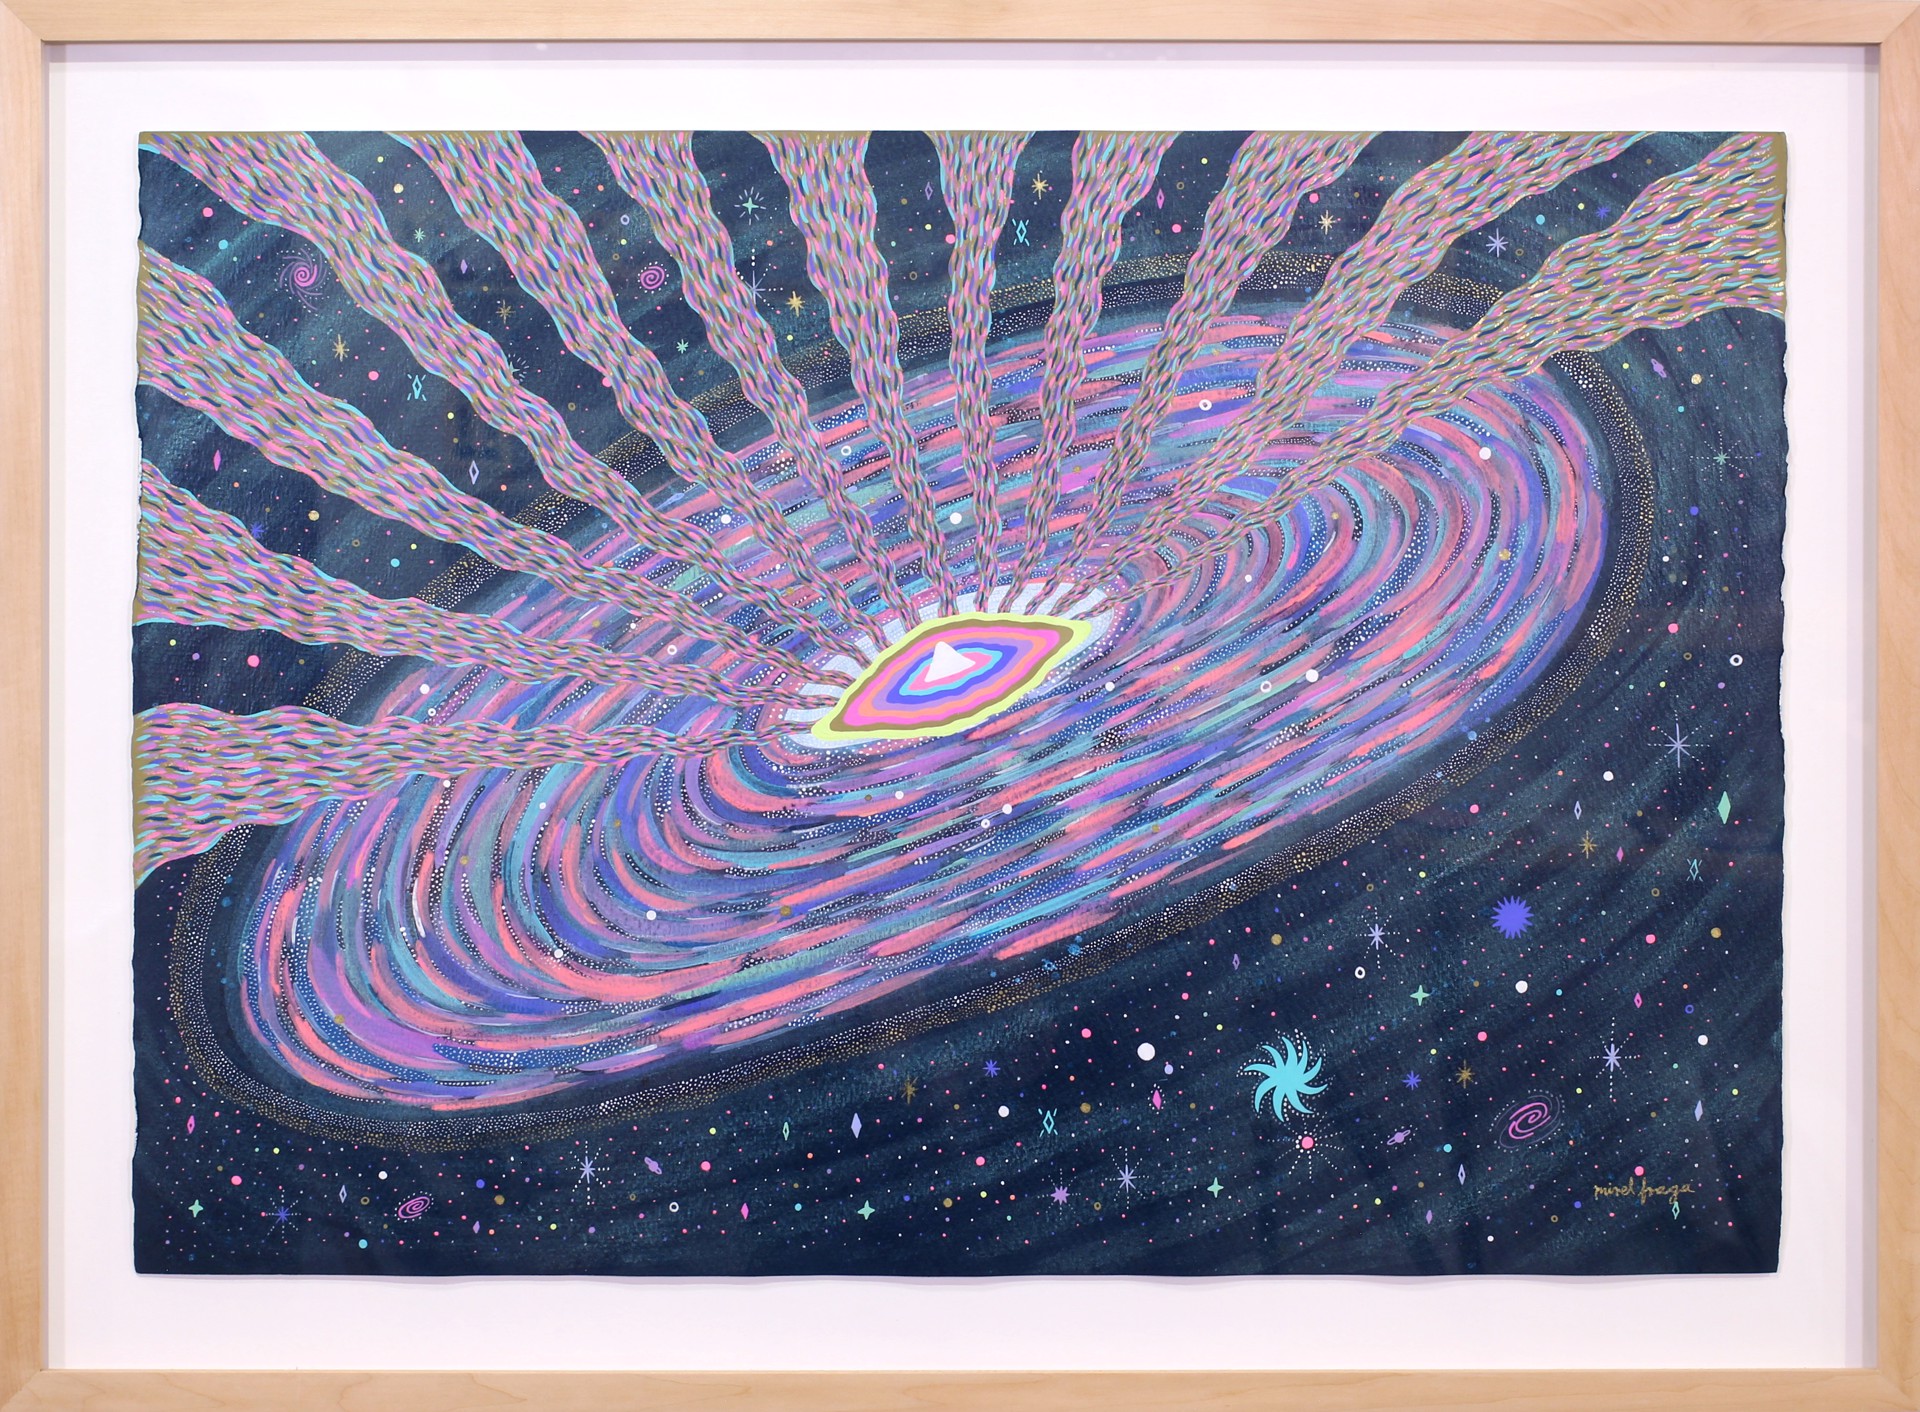 Andromeda (Framed) by Mirel Fraga